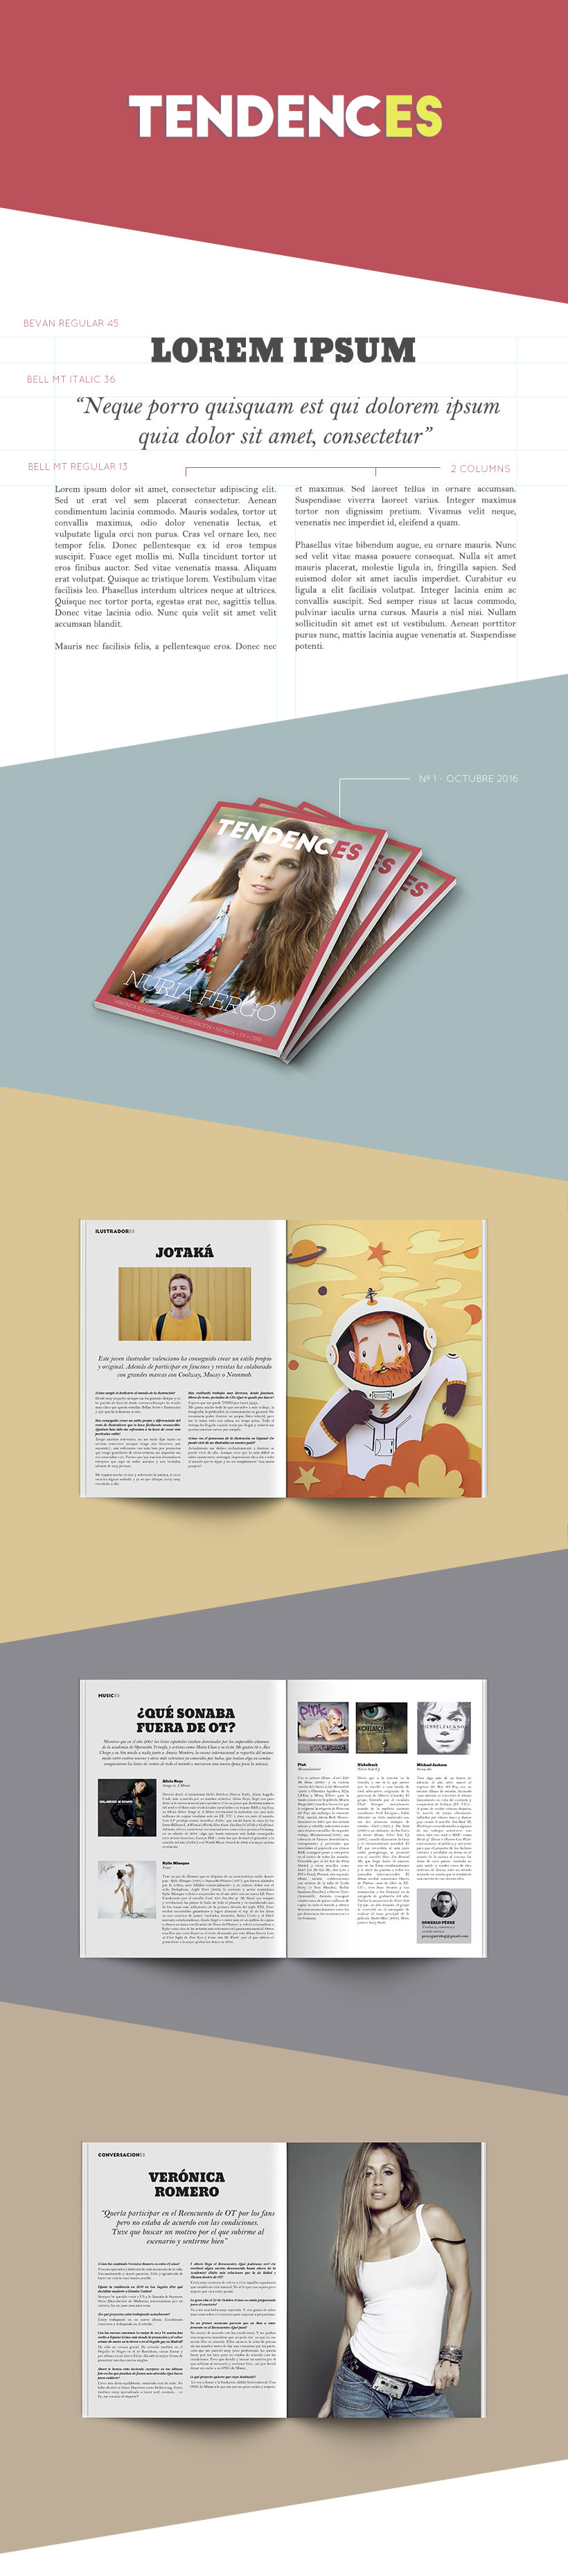 Tendences Magazine - Diseño y maquetación 0